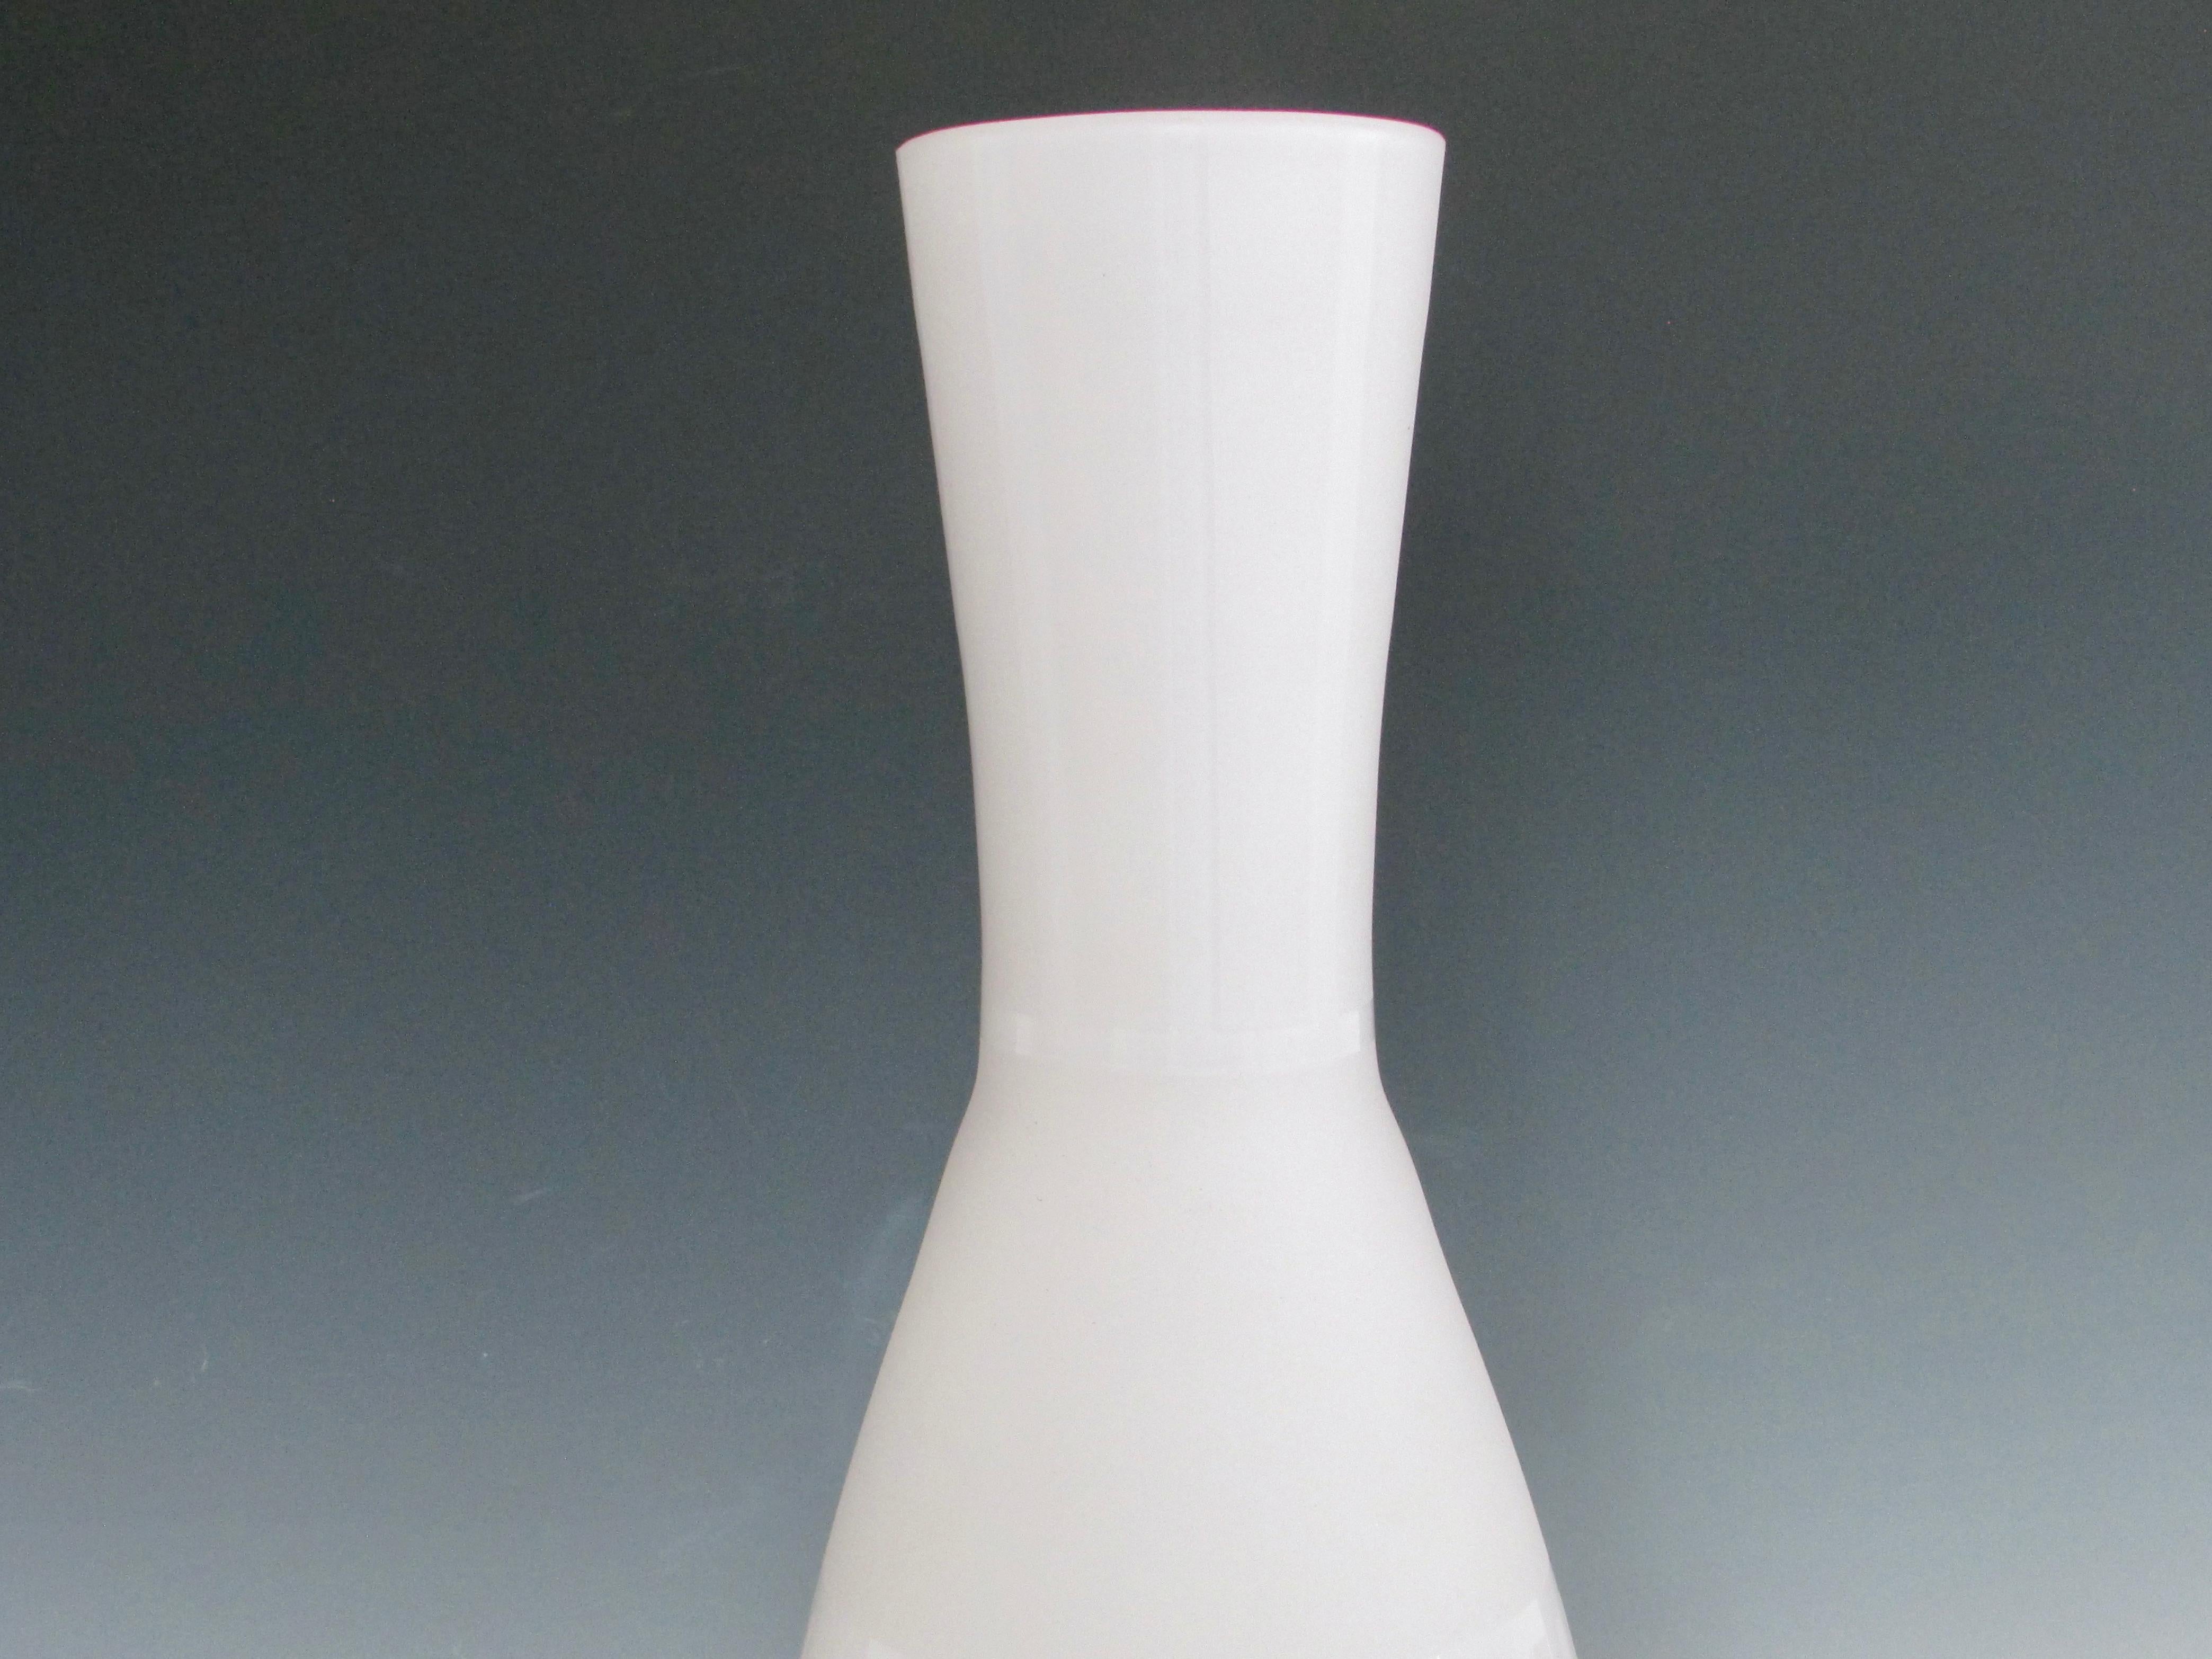 American Cased Glass White Floor Vase For Sale